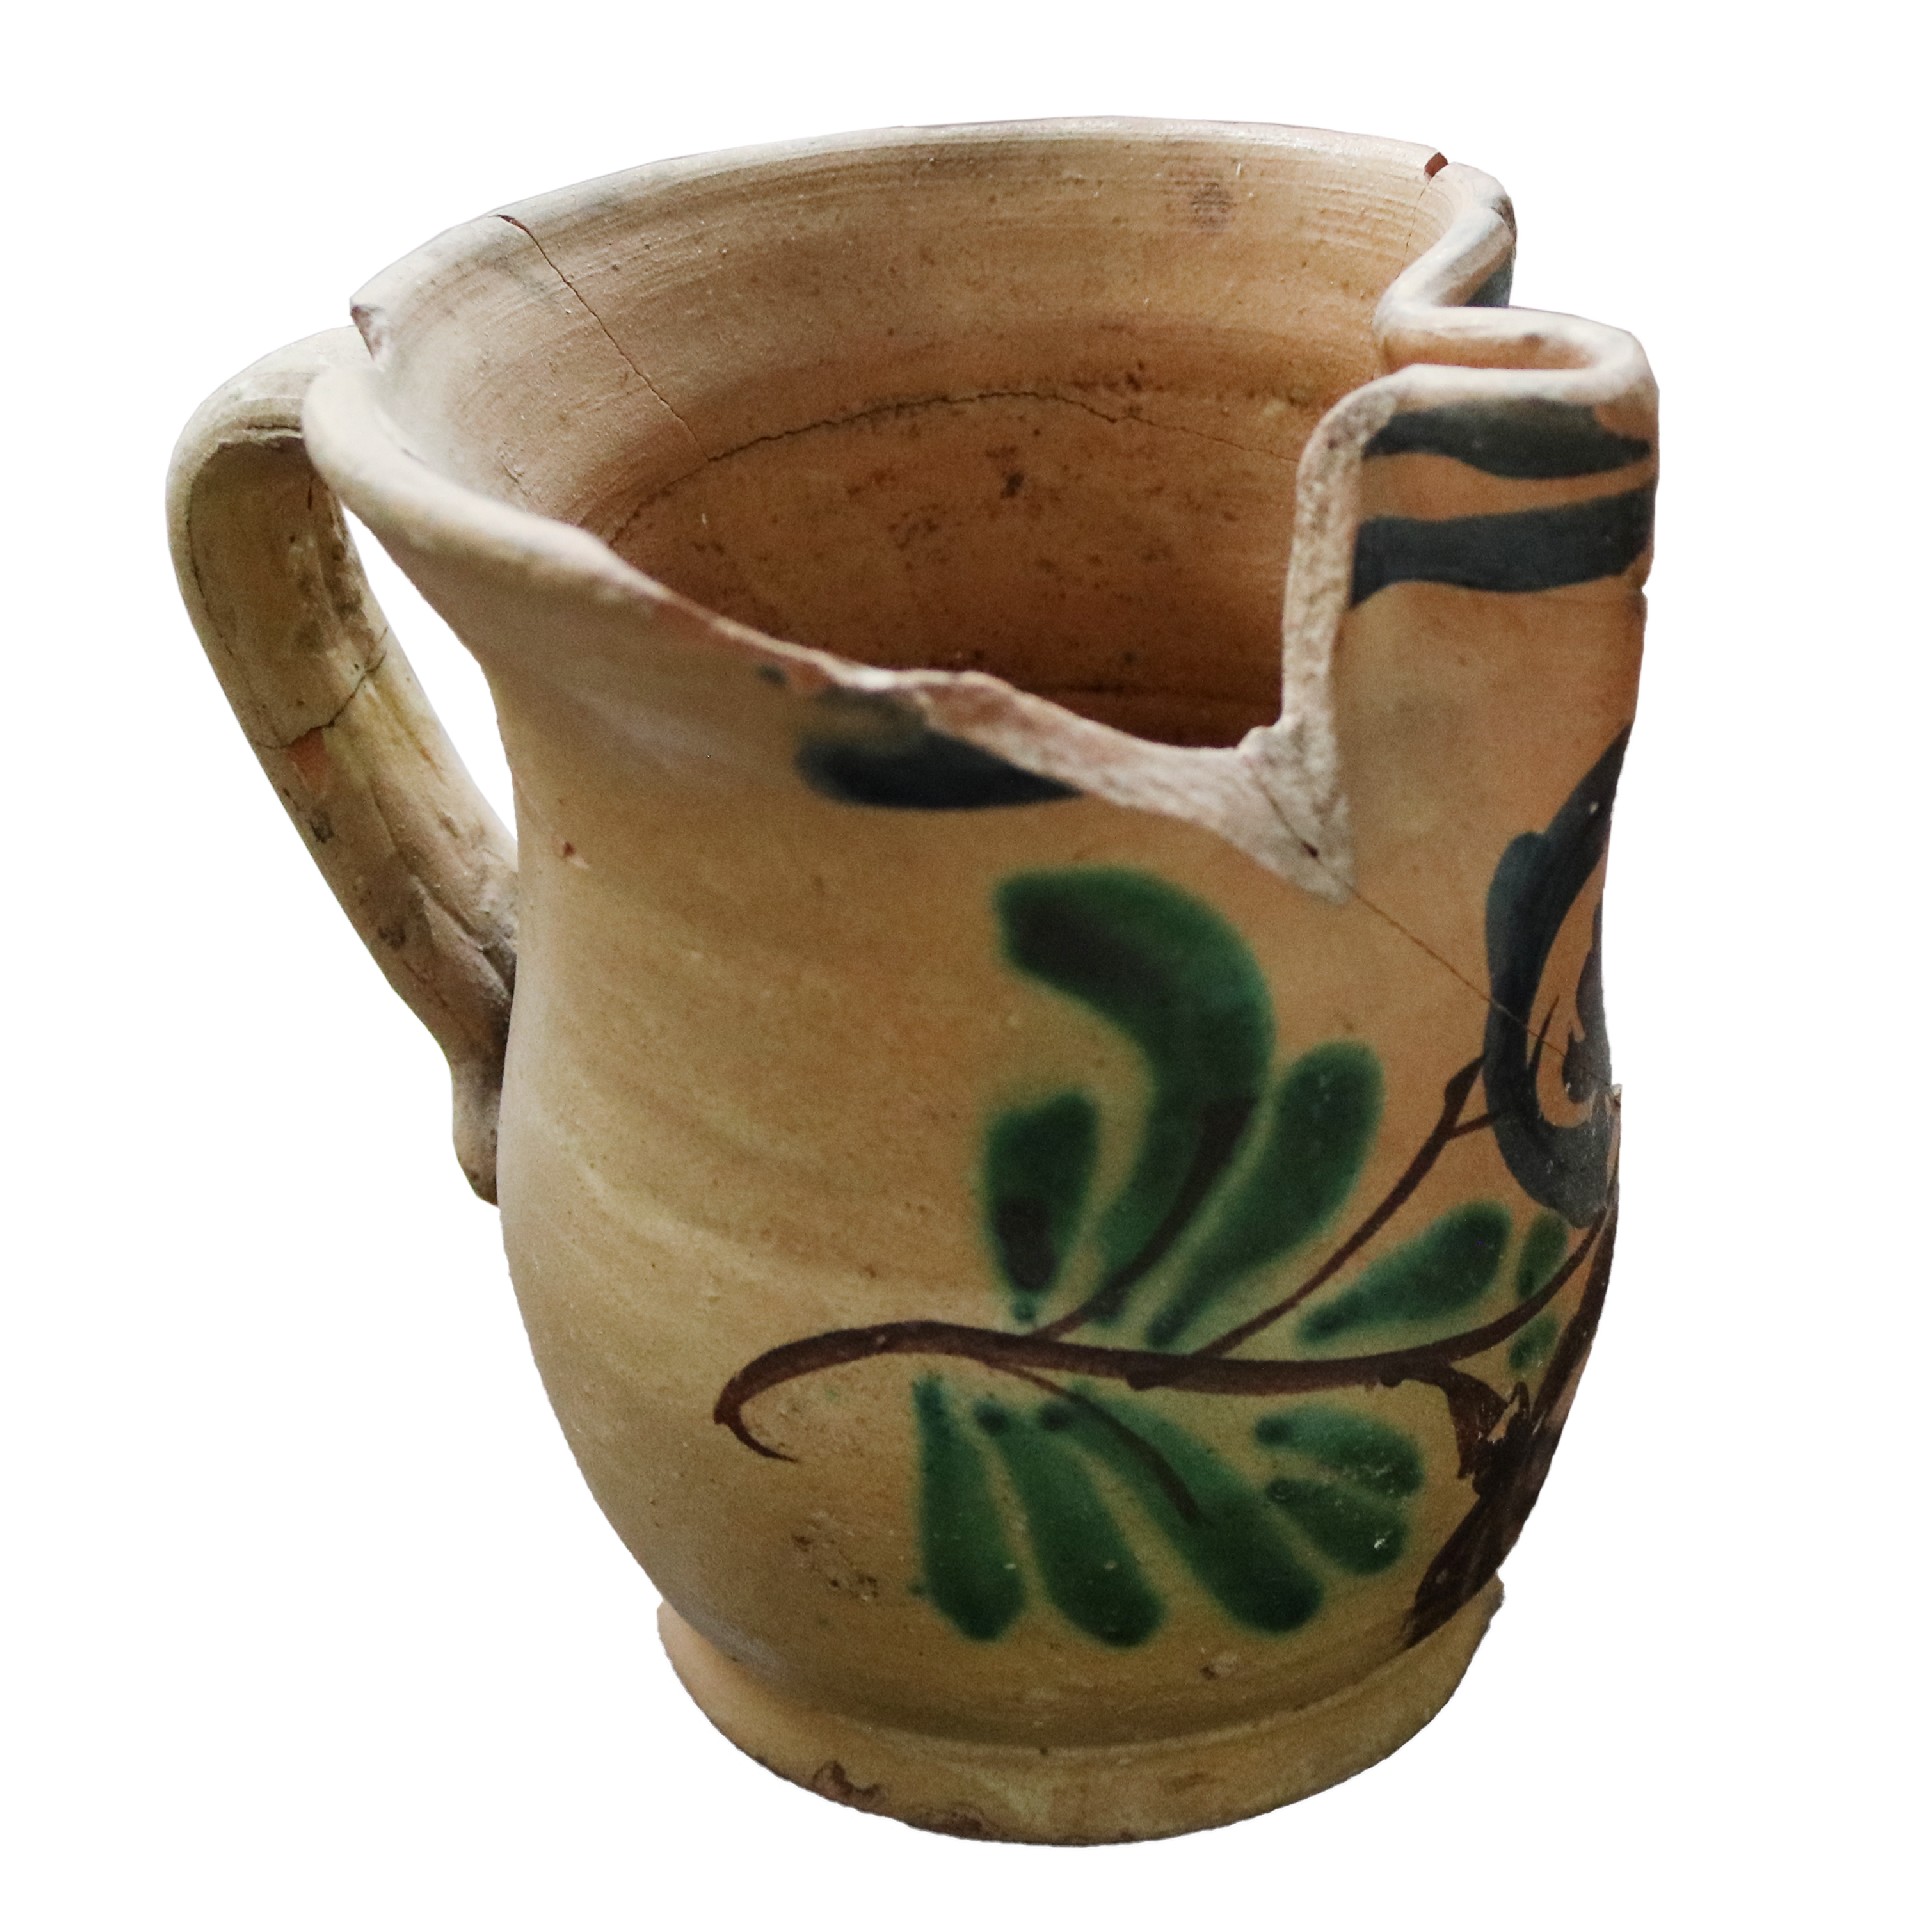 Antica brocca in maiolica - Ceramiche - Oggettistica - Prodotti - Antichità Fiorillo